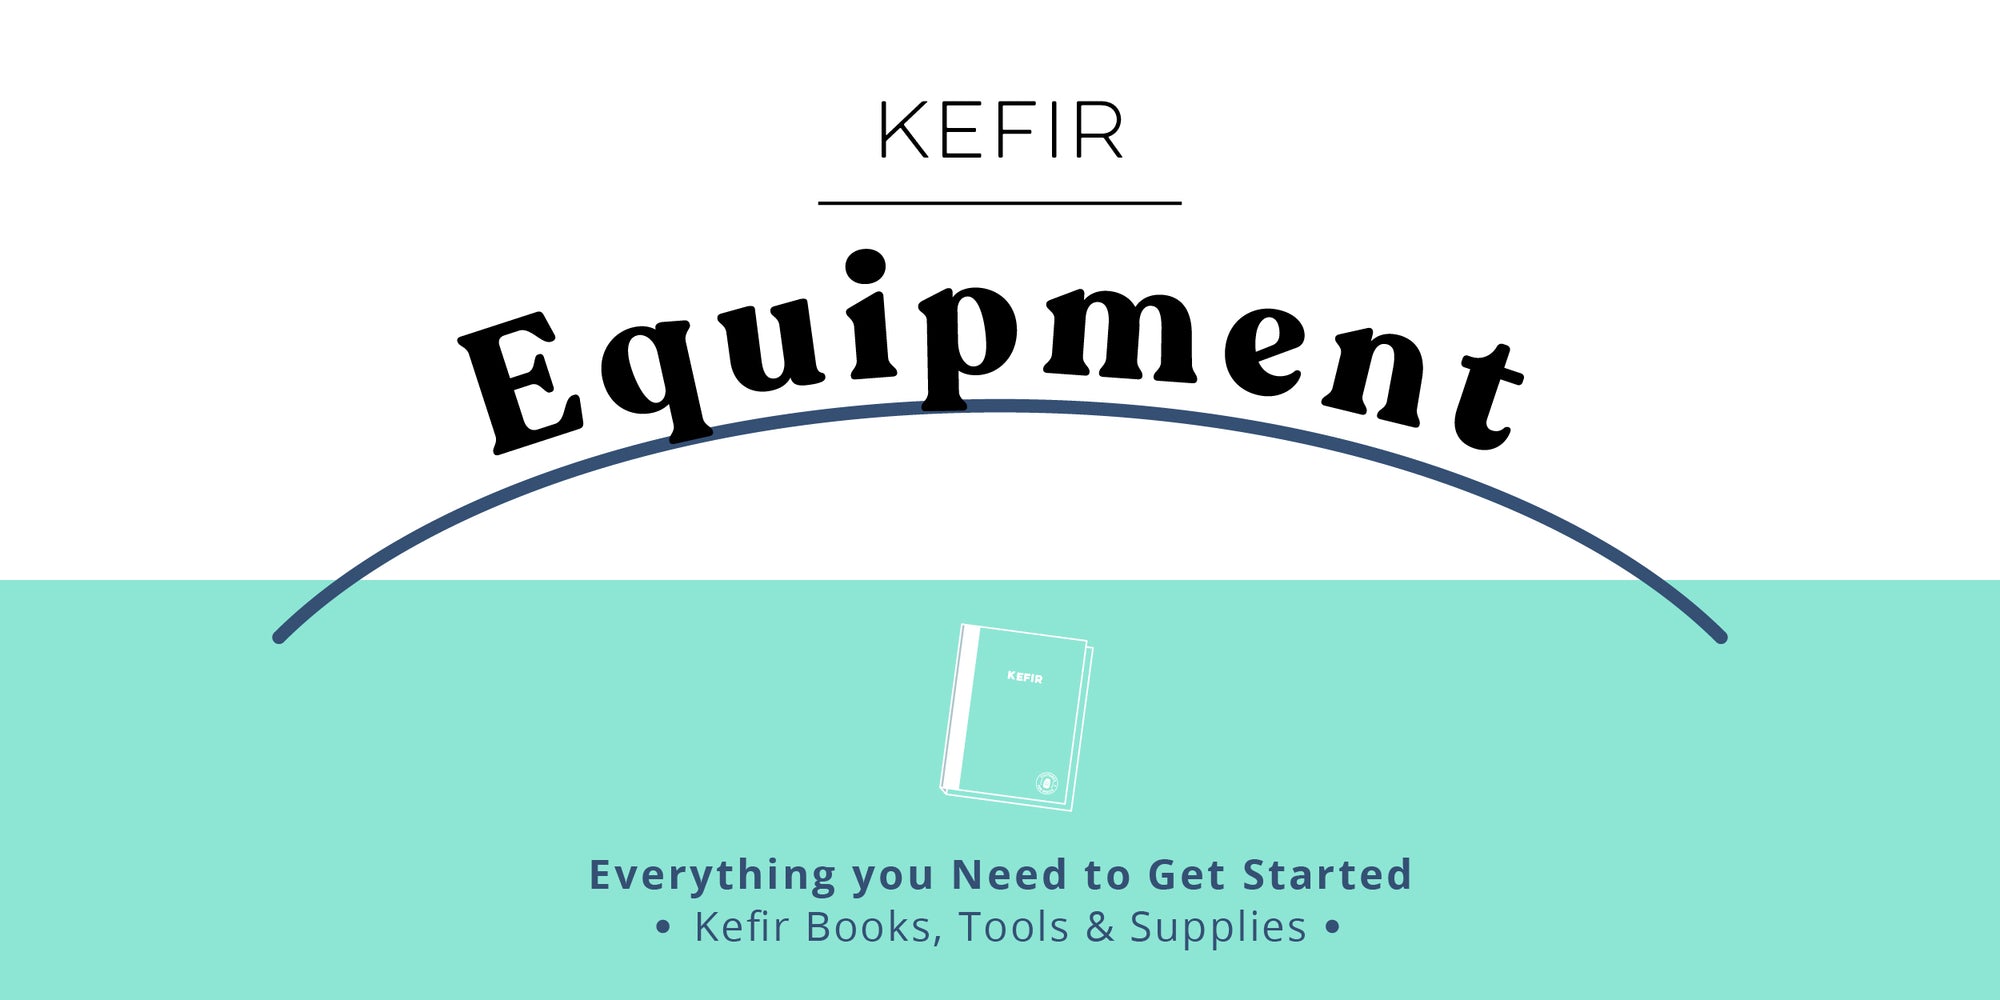 Kefir Equipment